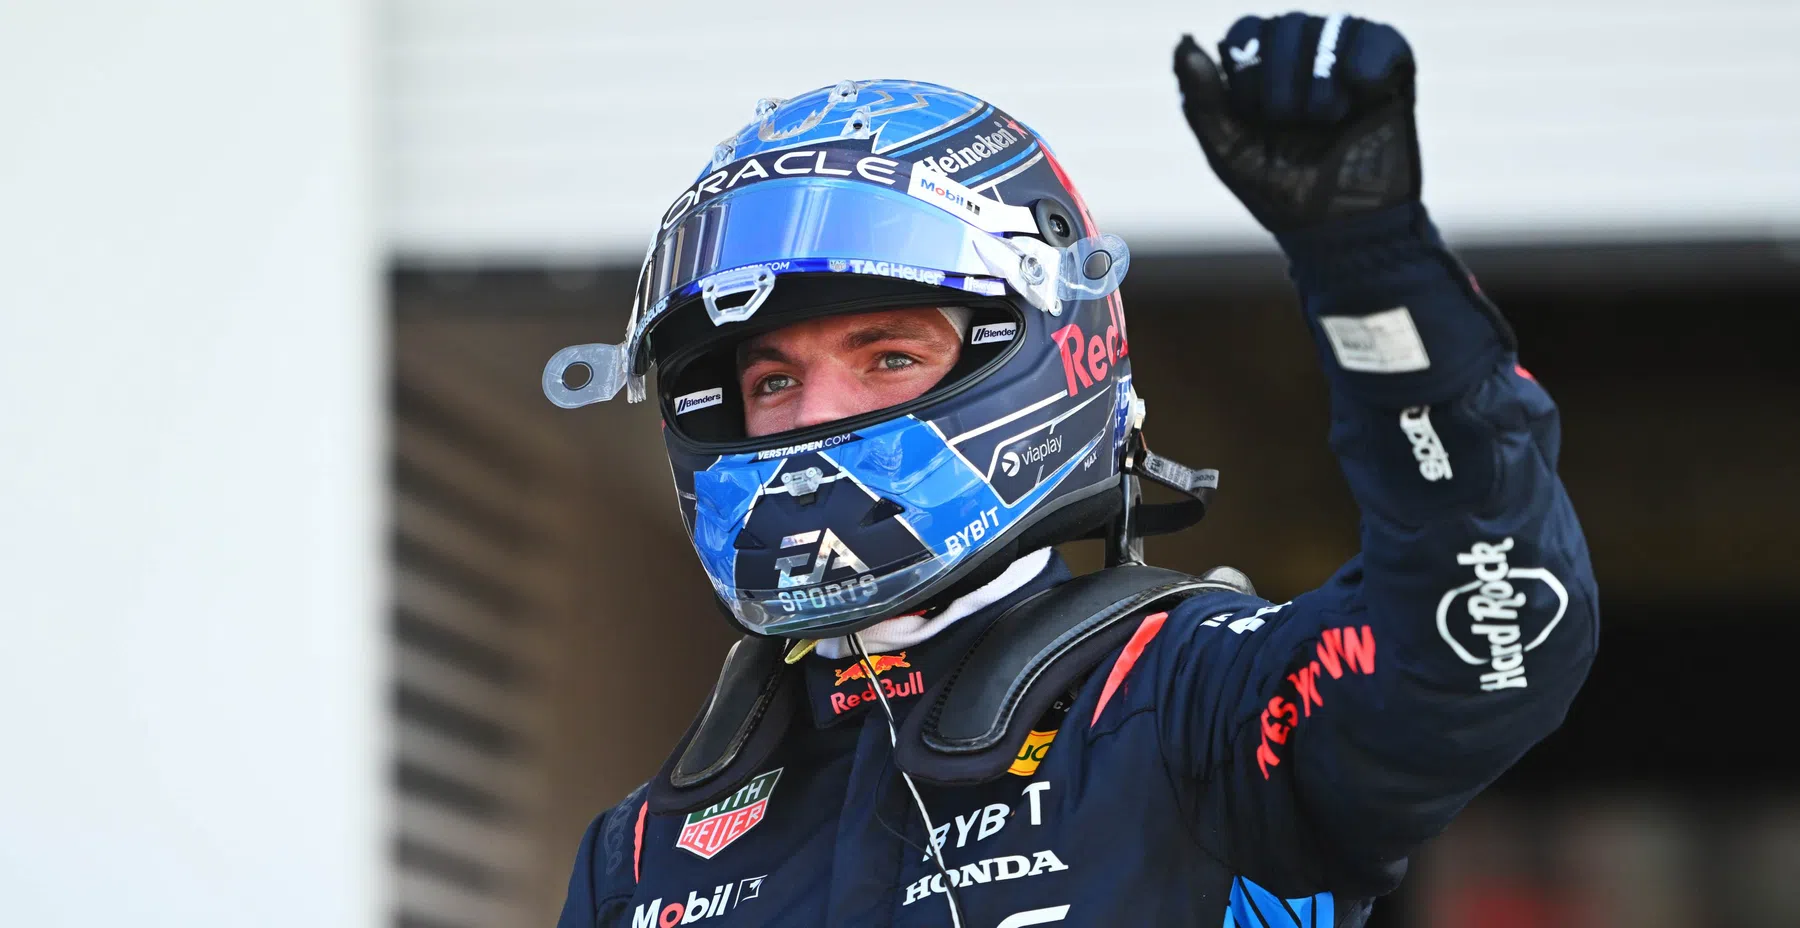 Verstappen wins sim race 24 hours Nurburgring with Team Redline